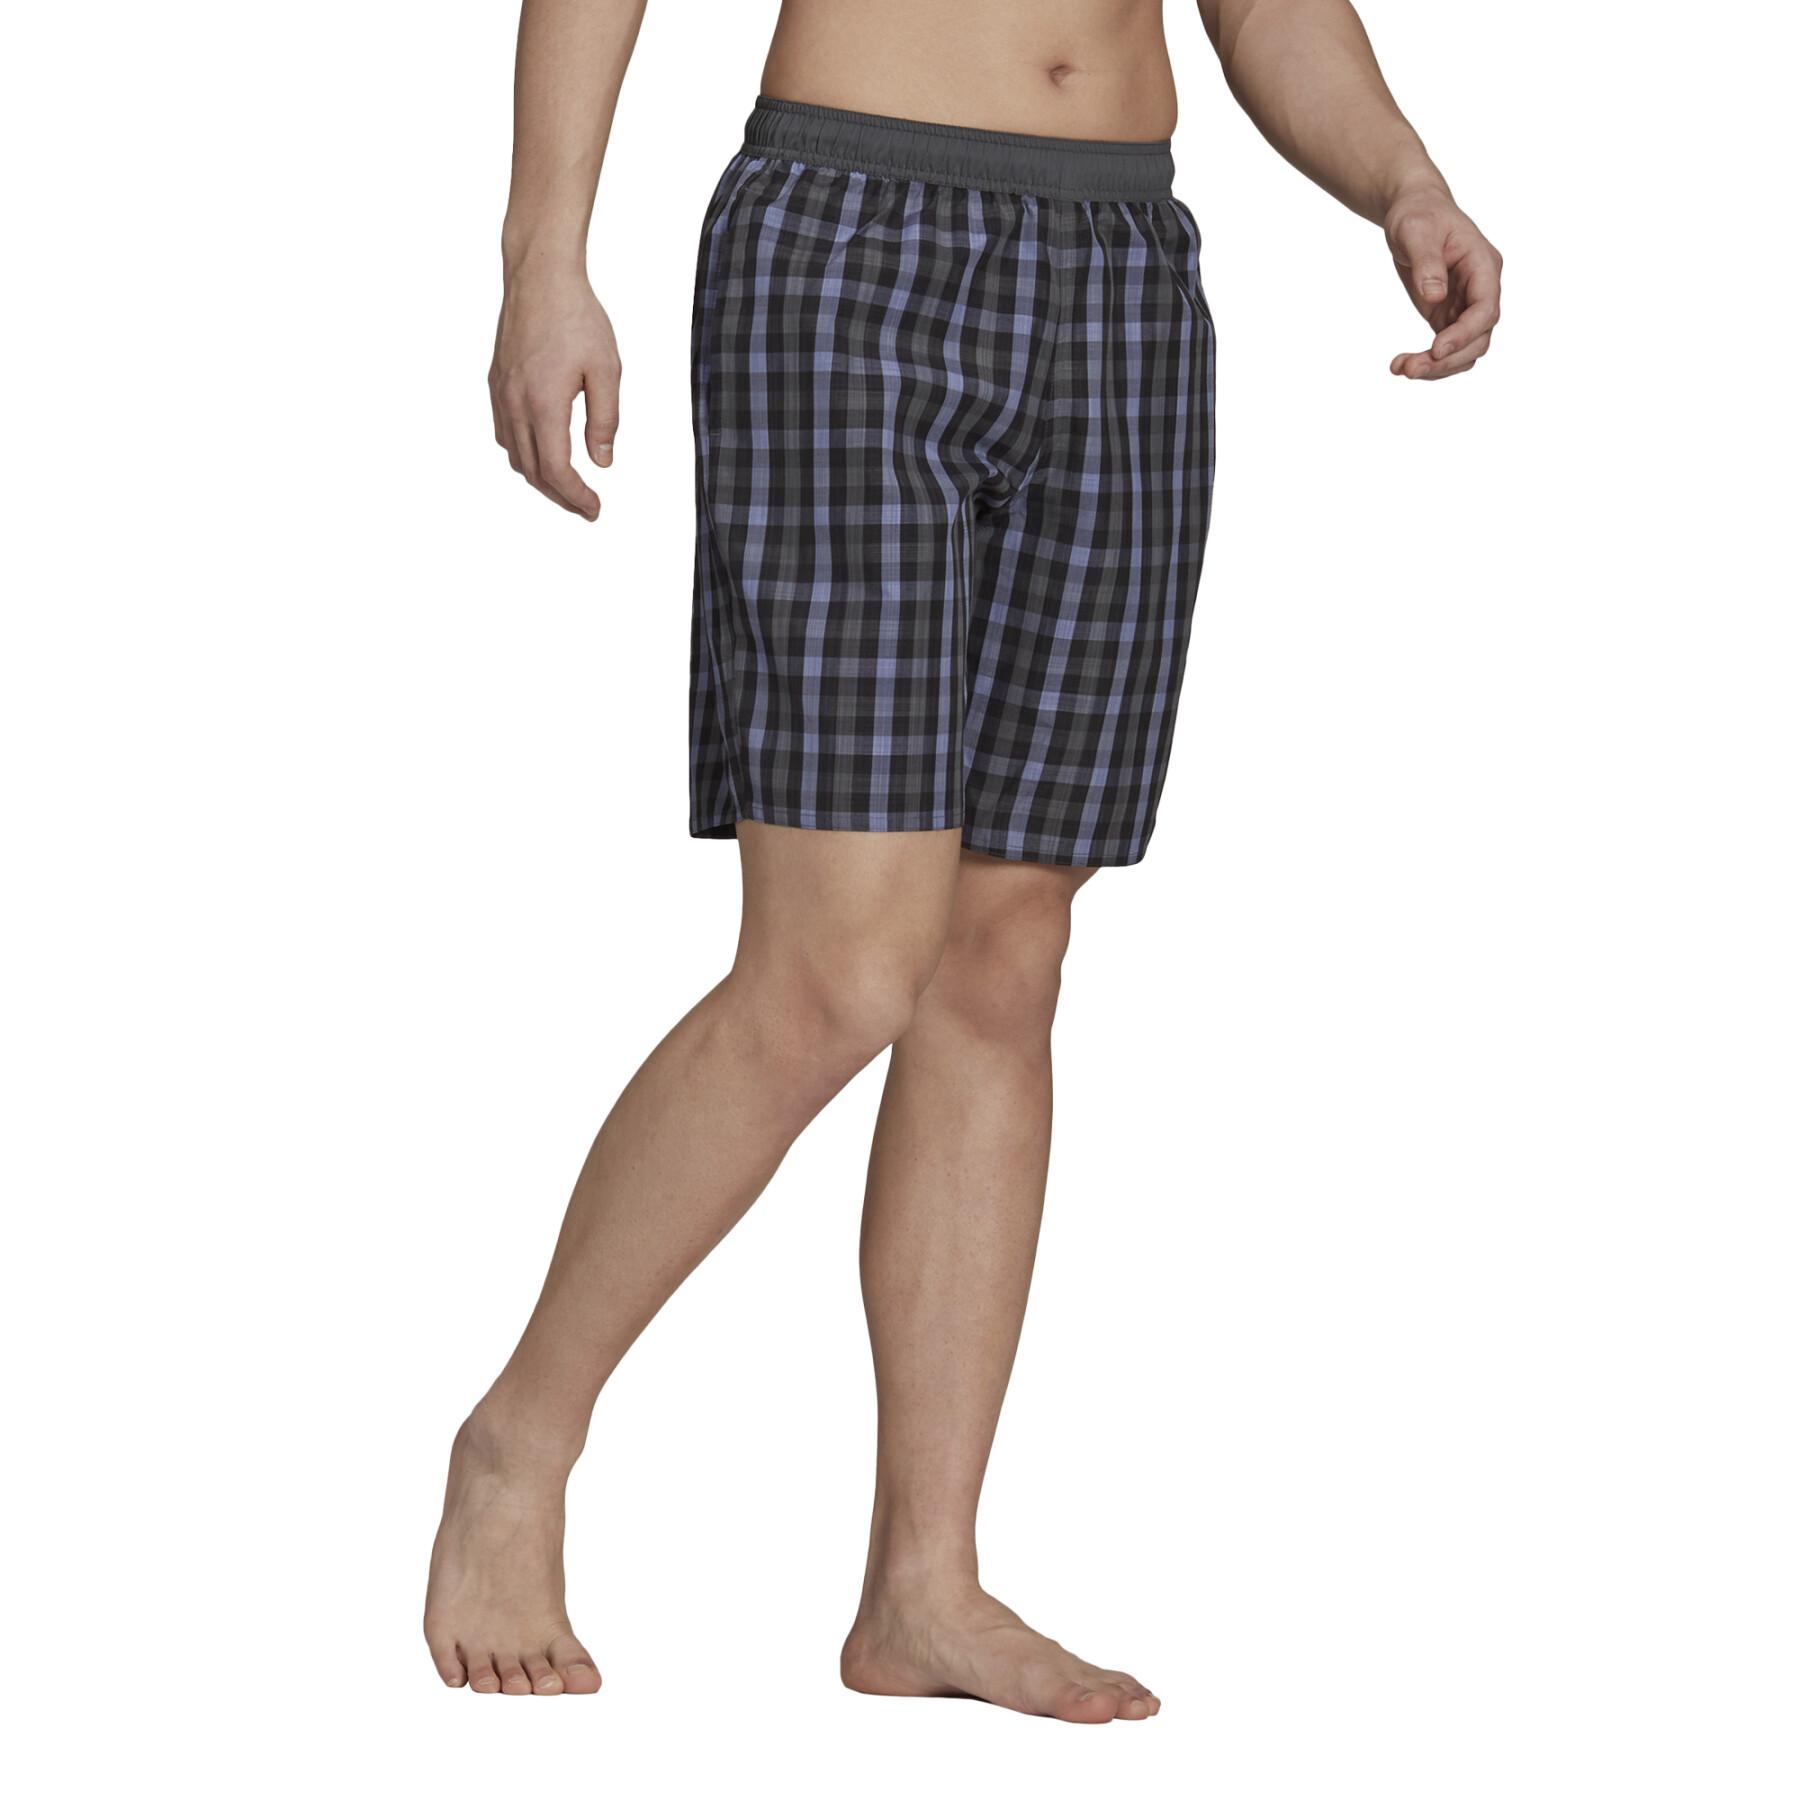 Pantalones cortos de baño adidas Length Check